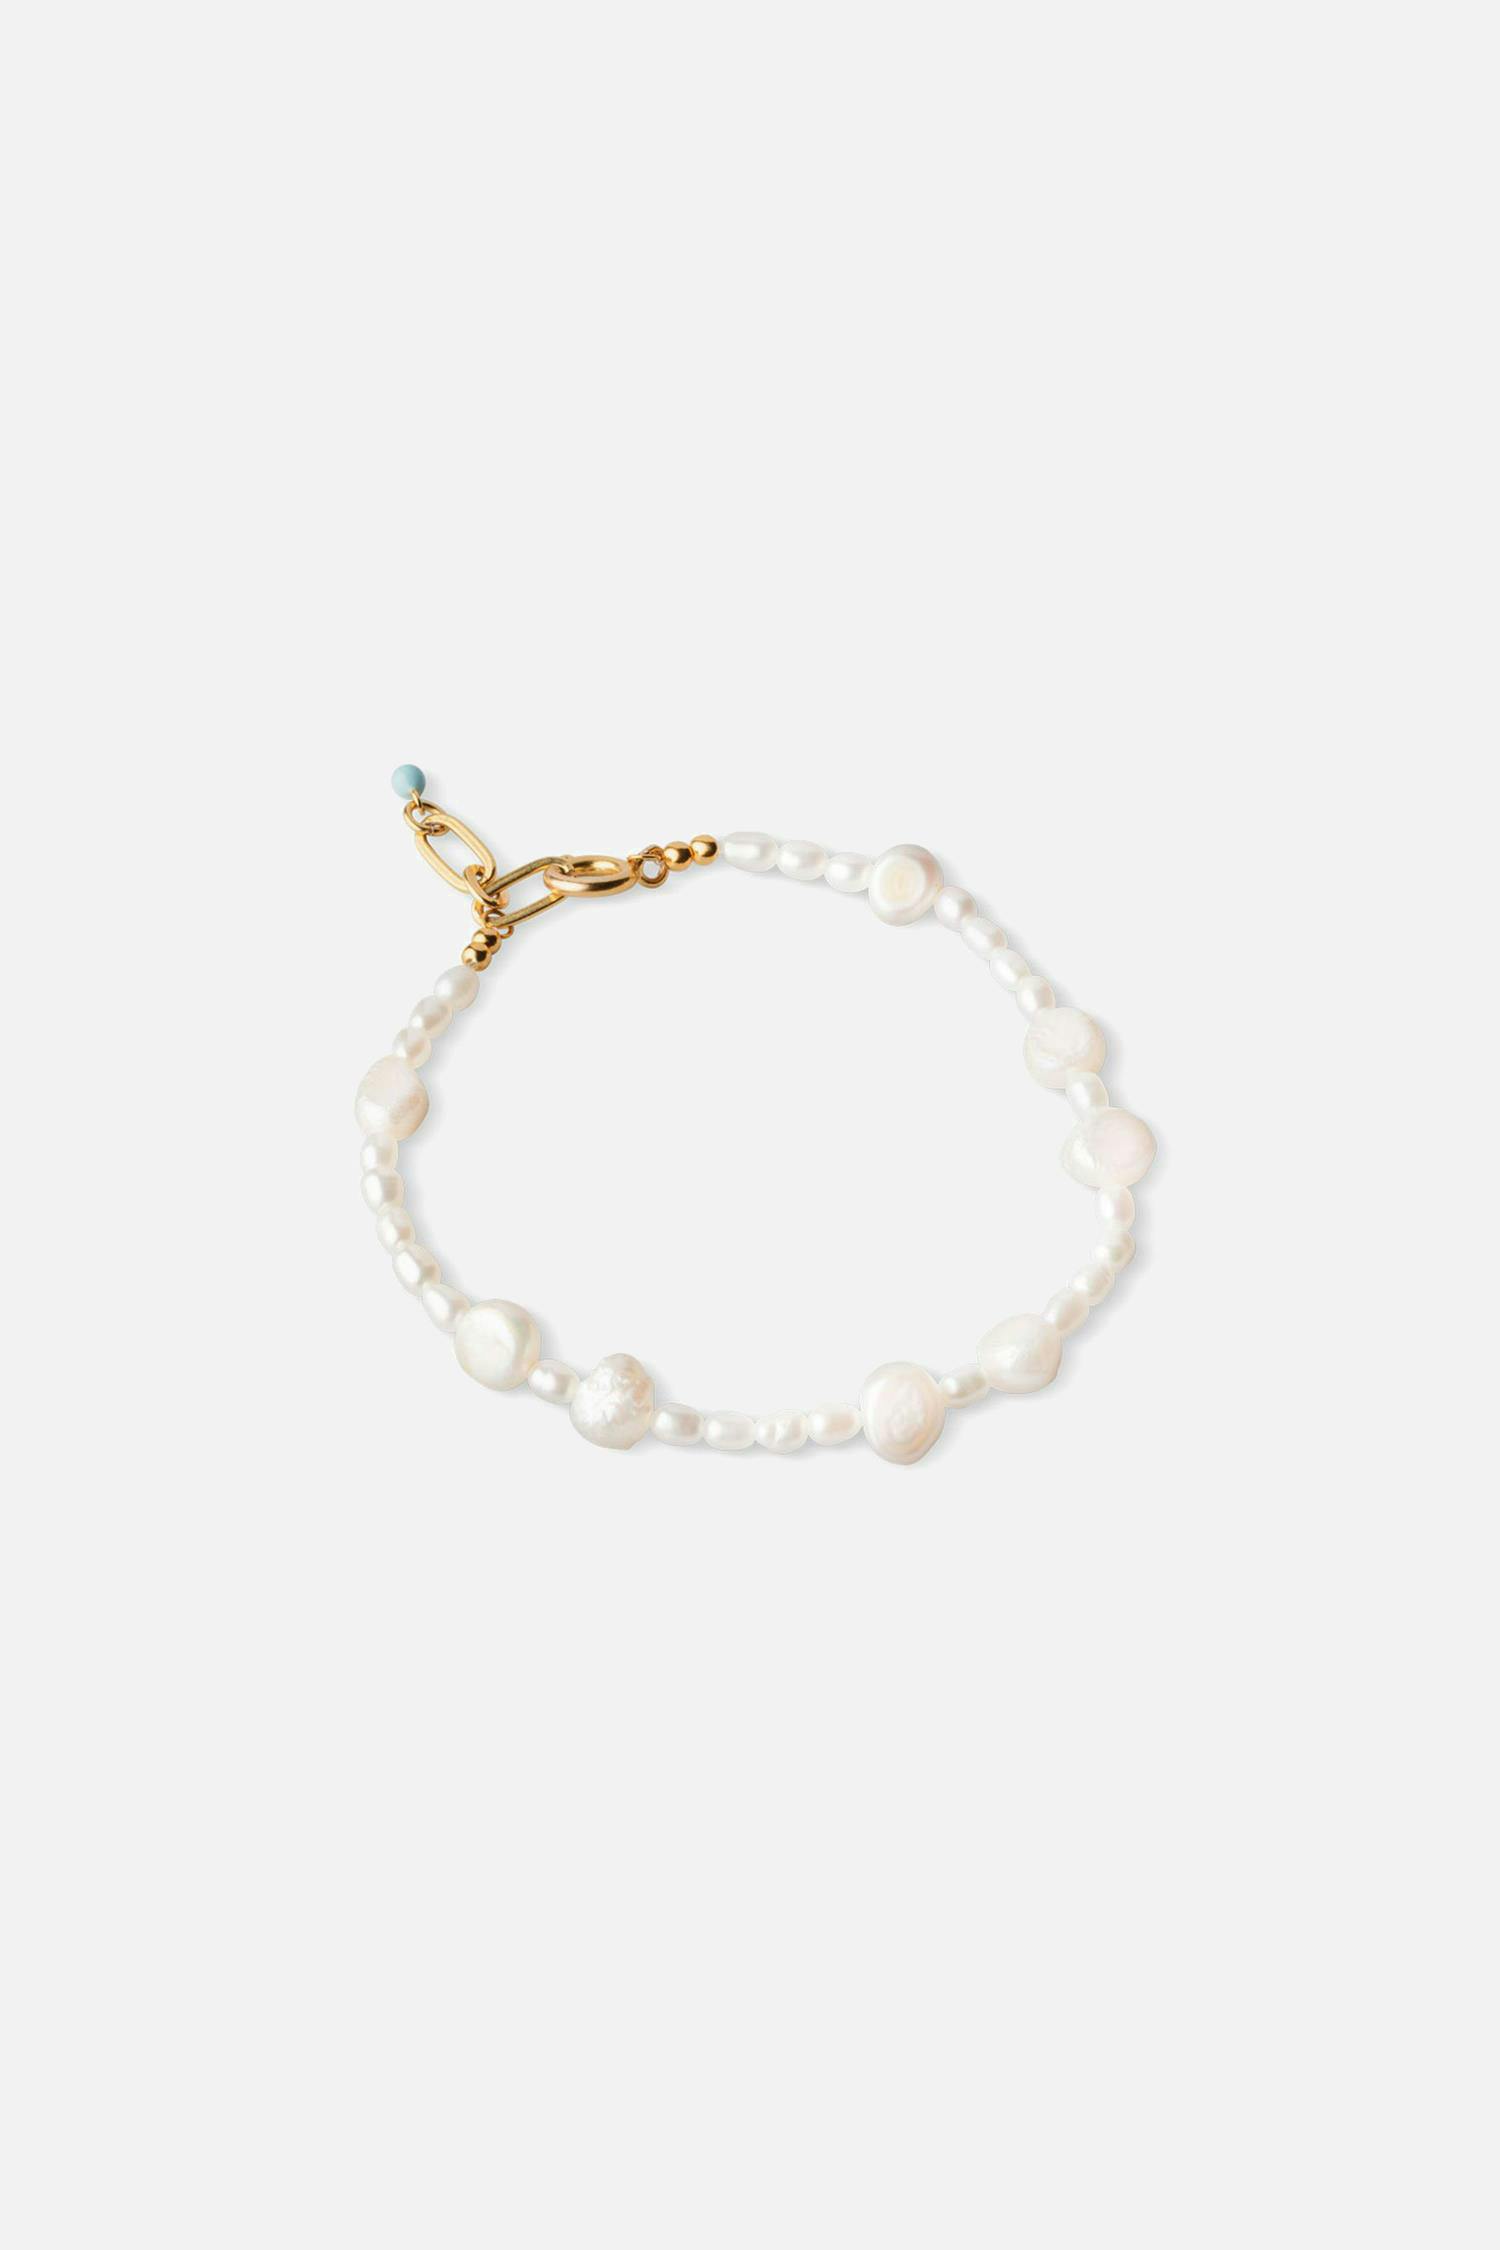 Pearlie bracelet